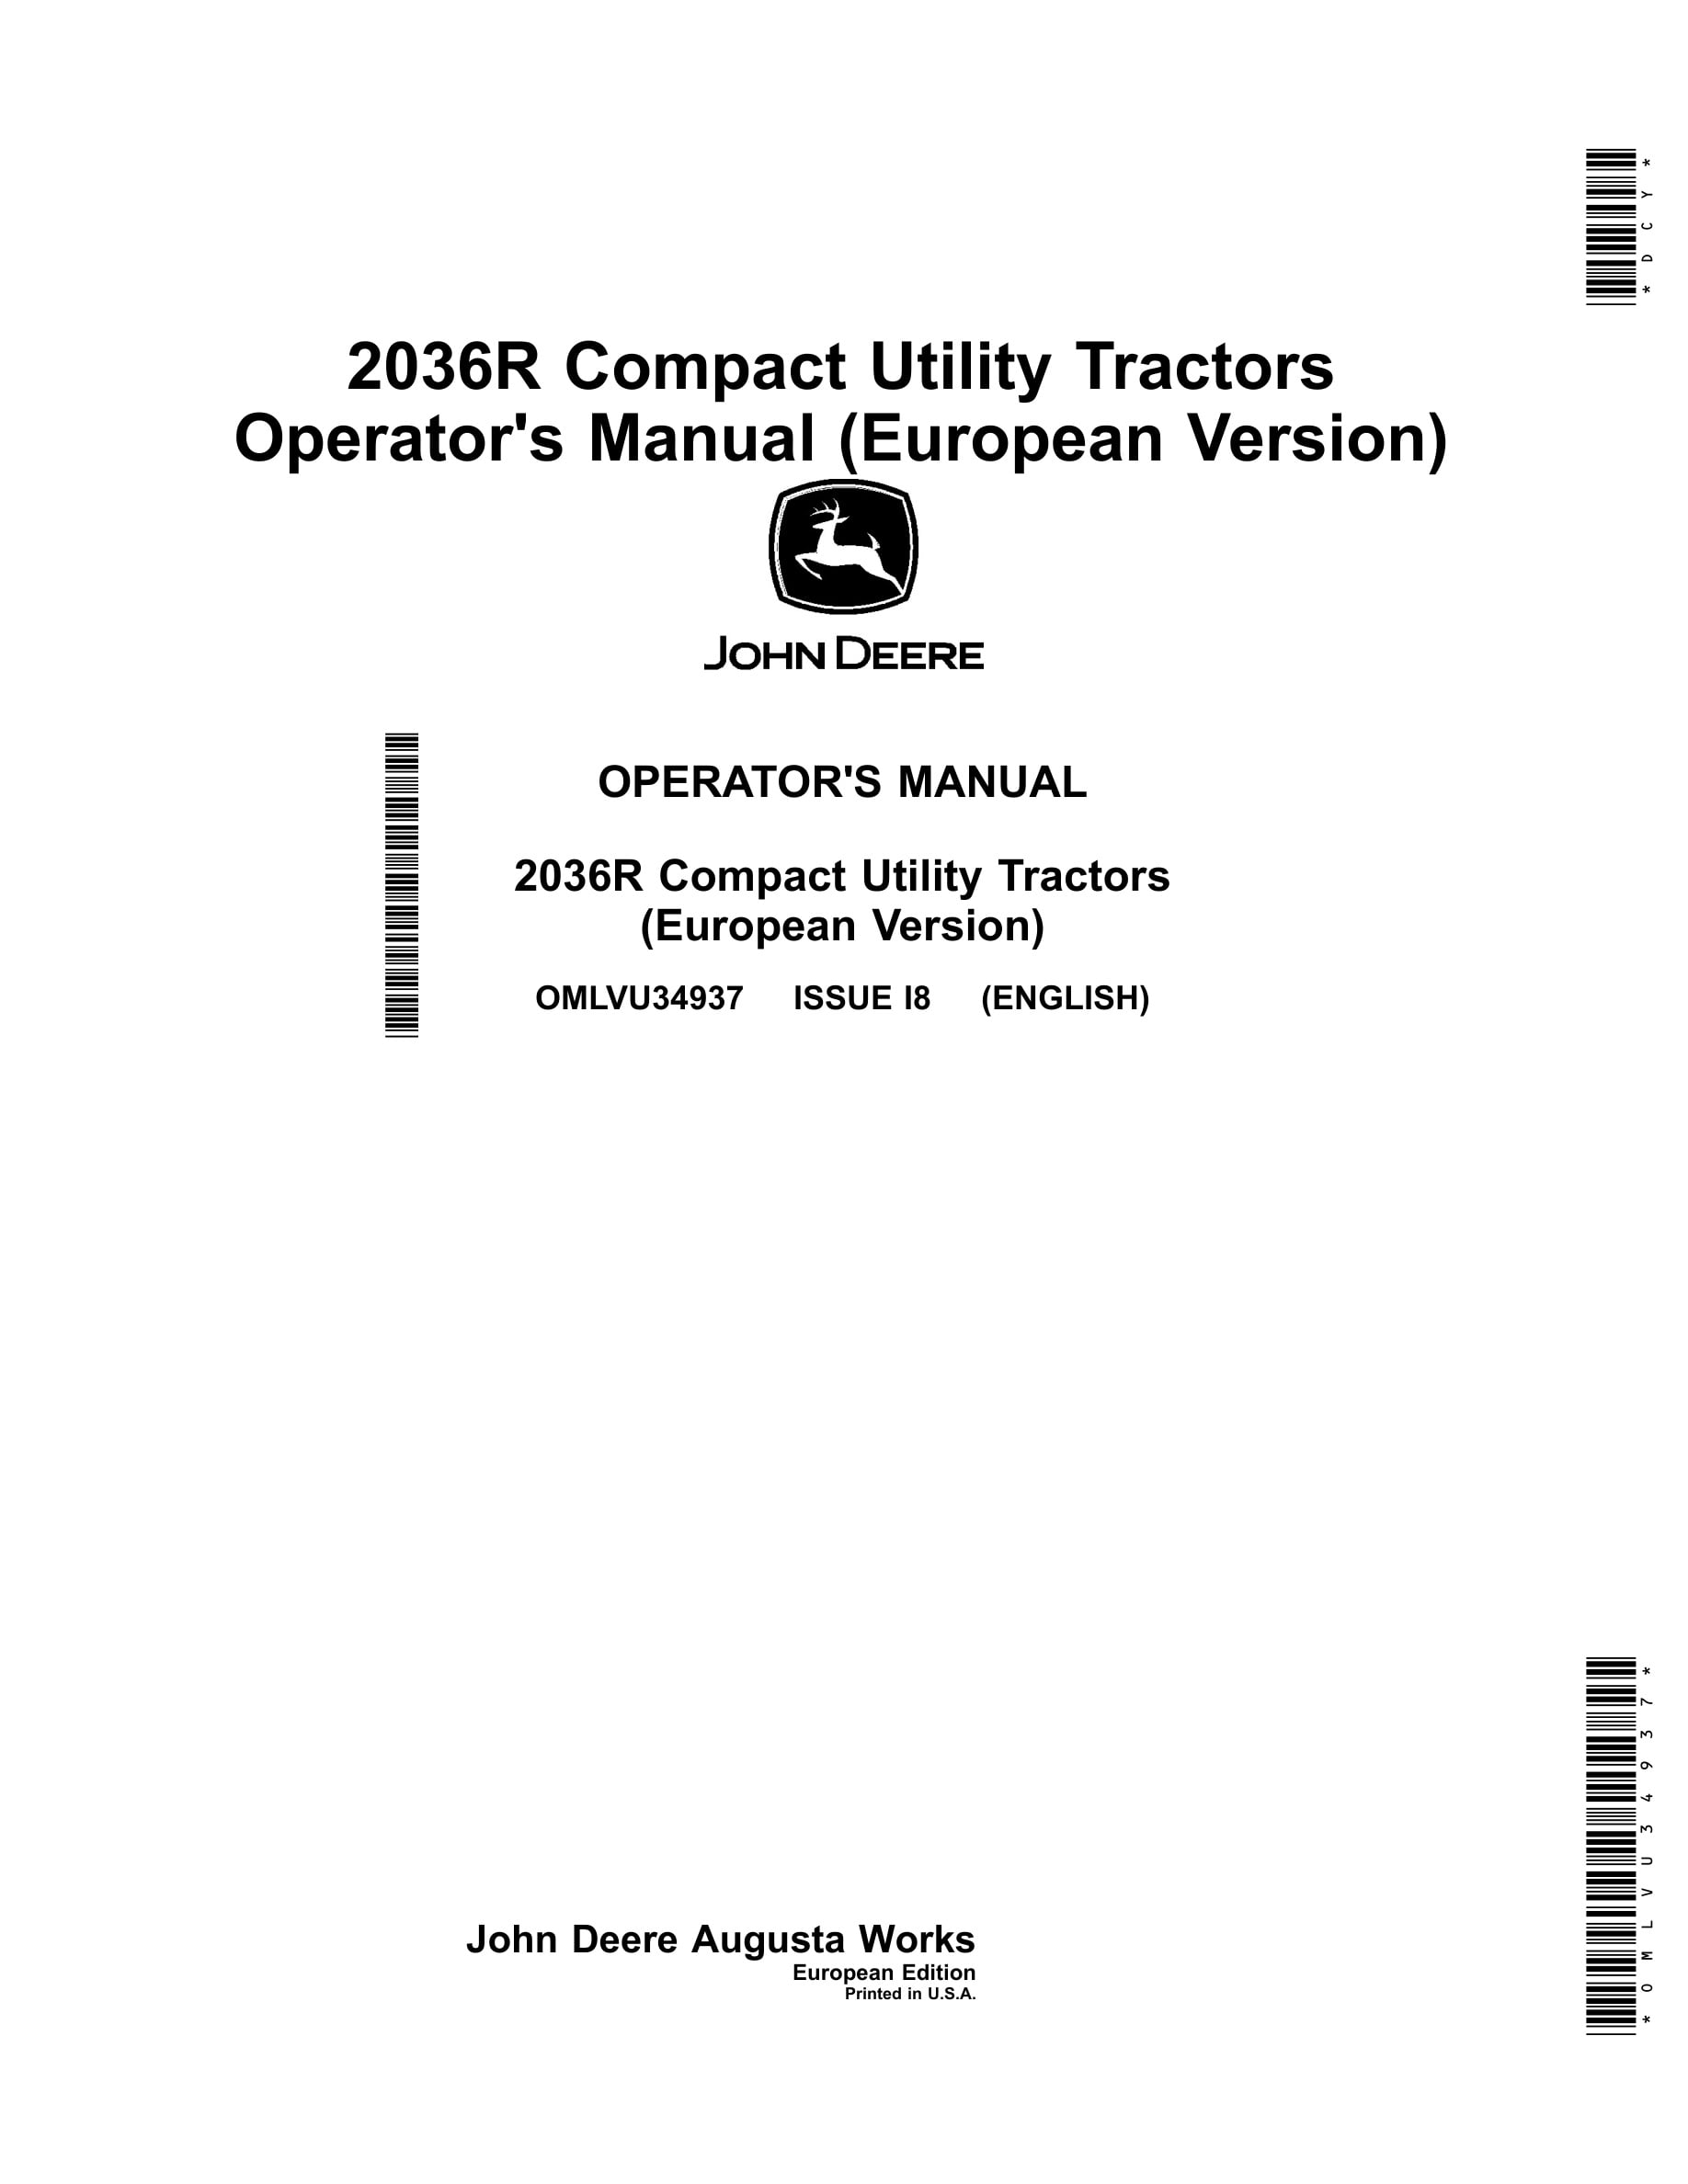 John Deere 2036r Compact Utility Tractors Operator Manuals OMLVU34937-1